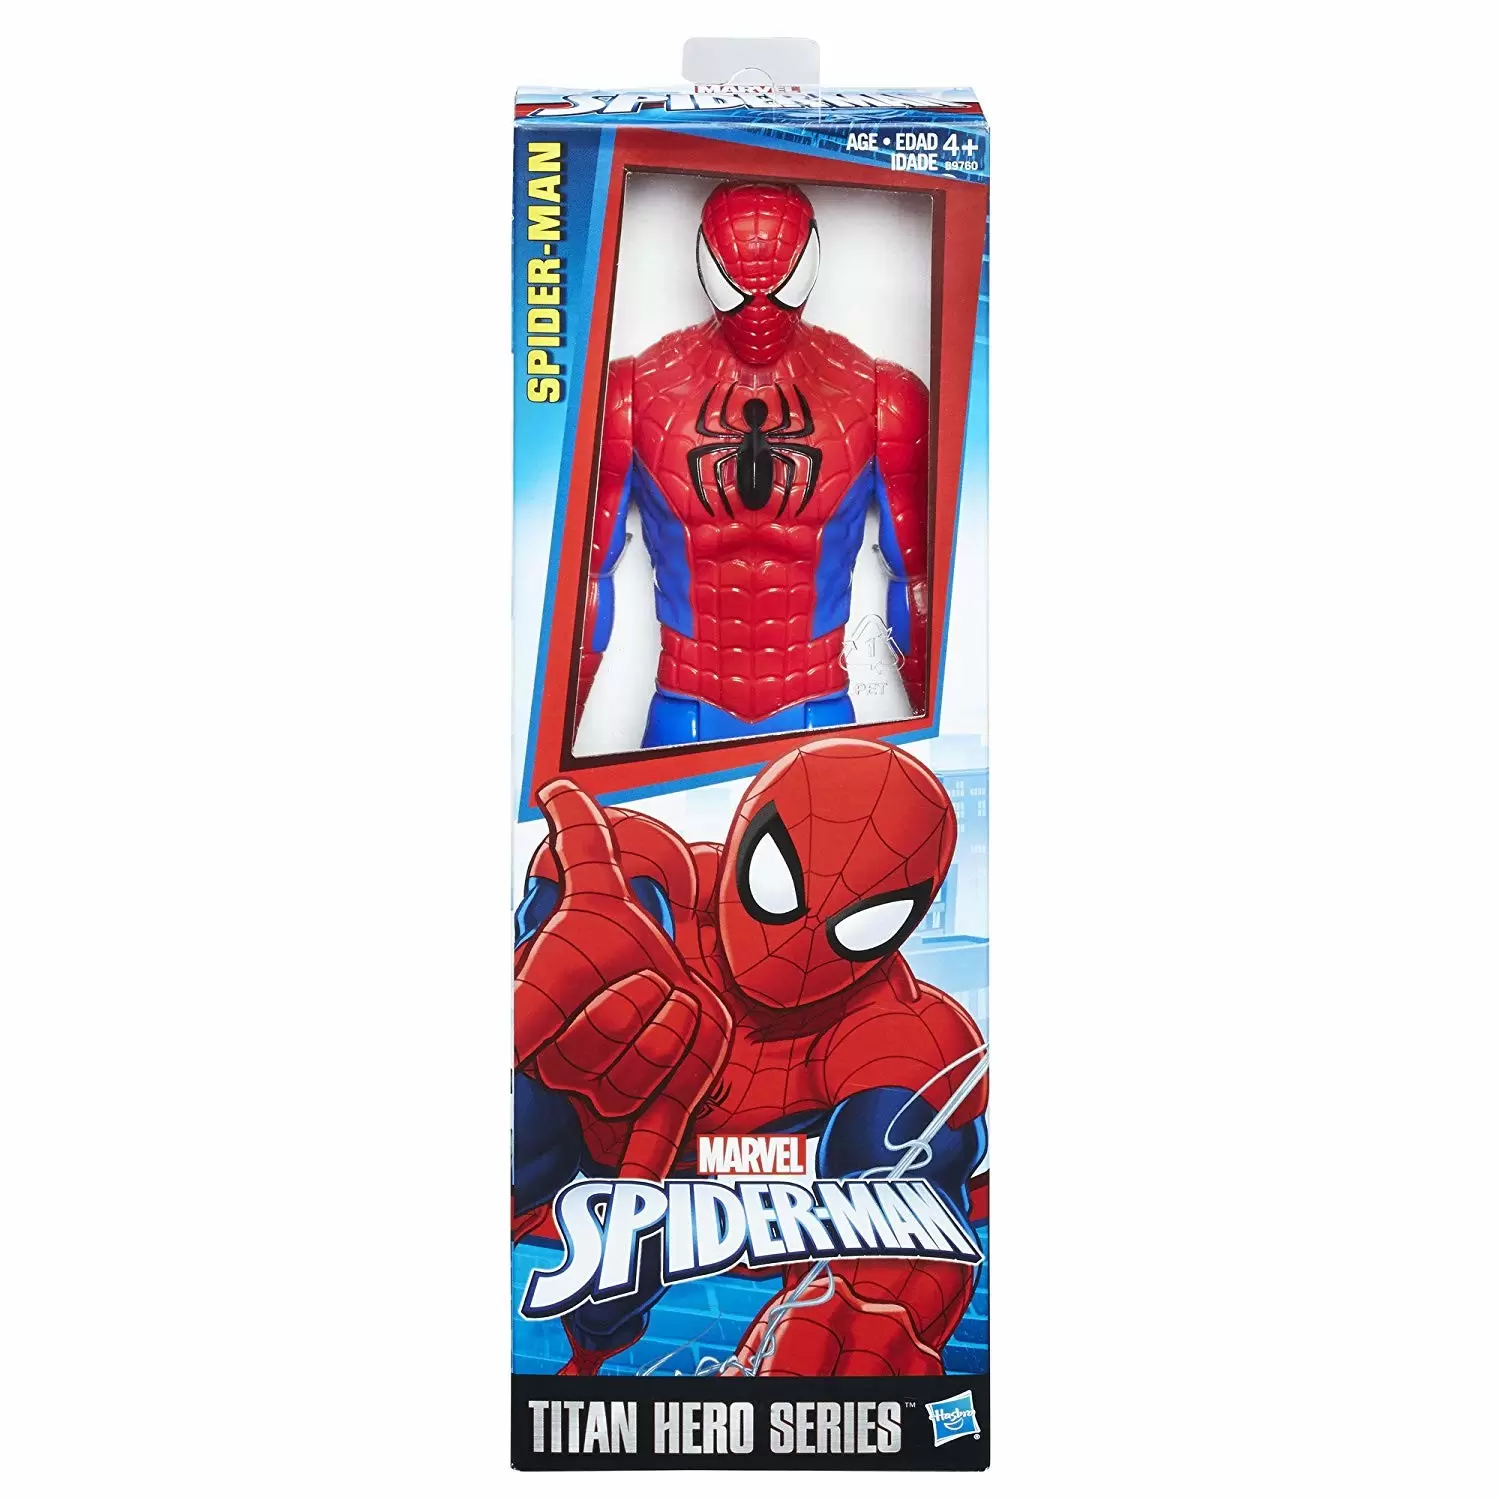 Titan Hero Series - Spider-Man - Spider-Man